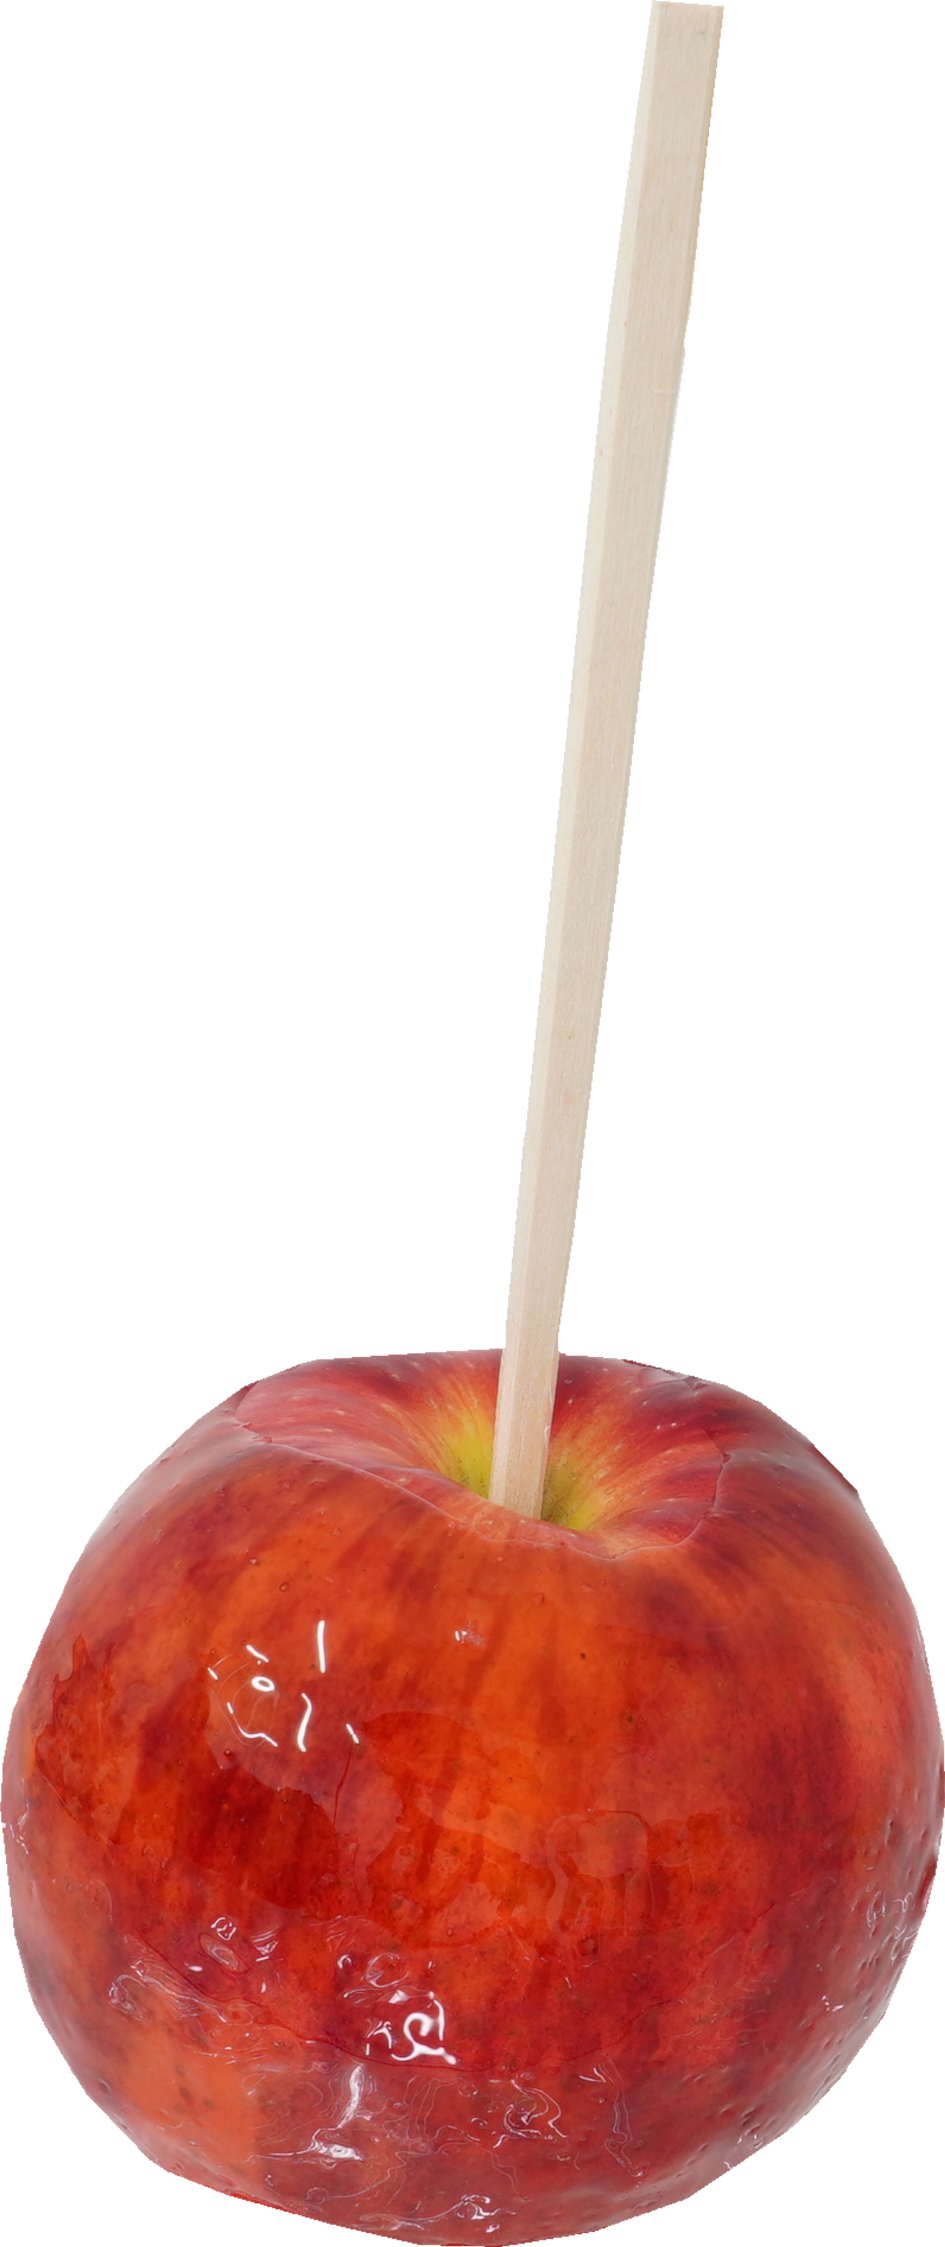 りんご飴 食品画像のそざい屋さん 商用可の食べ物フリー画像配布サイト